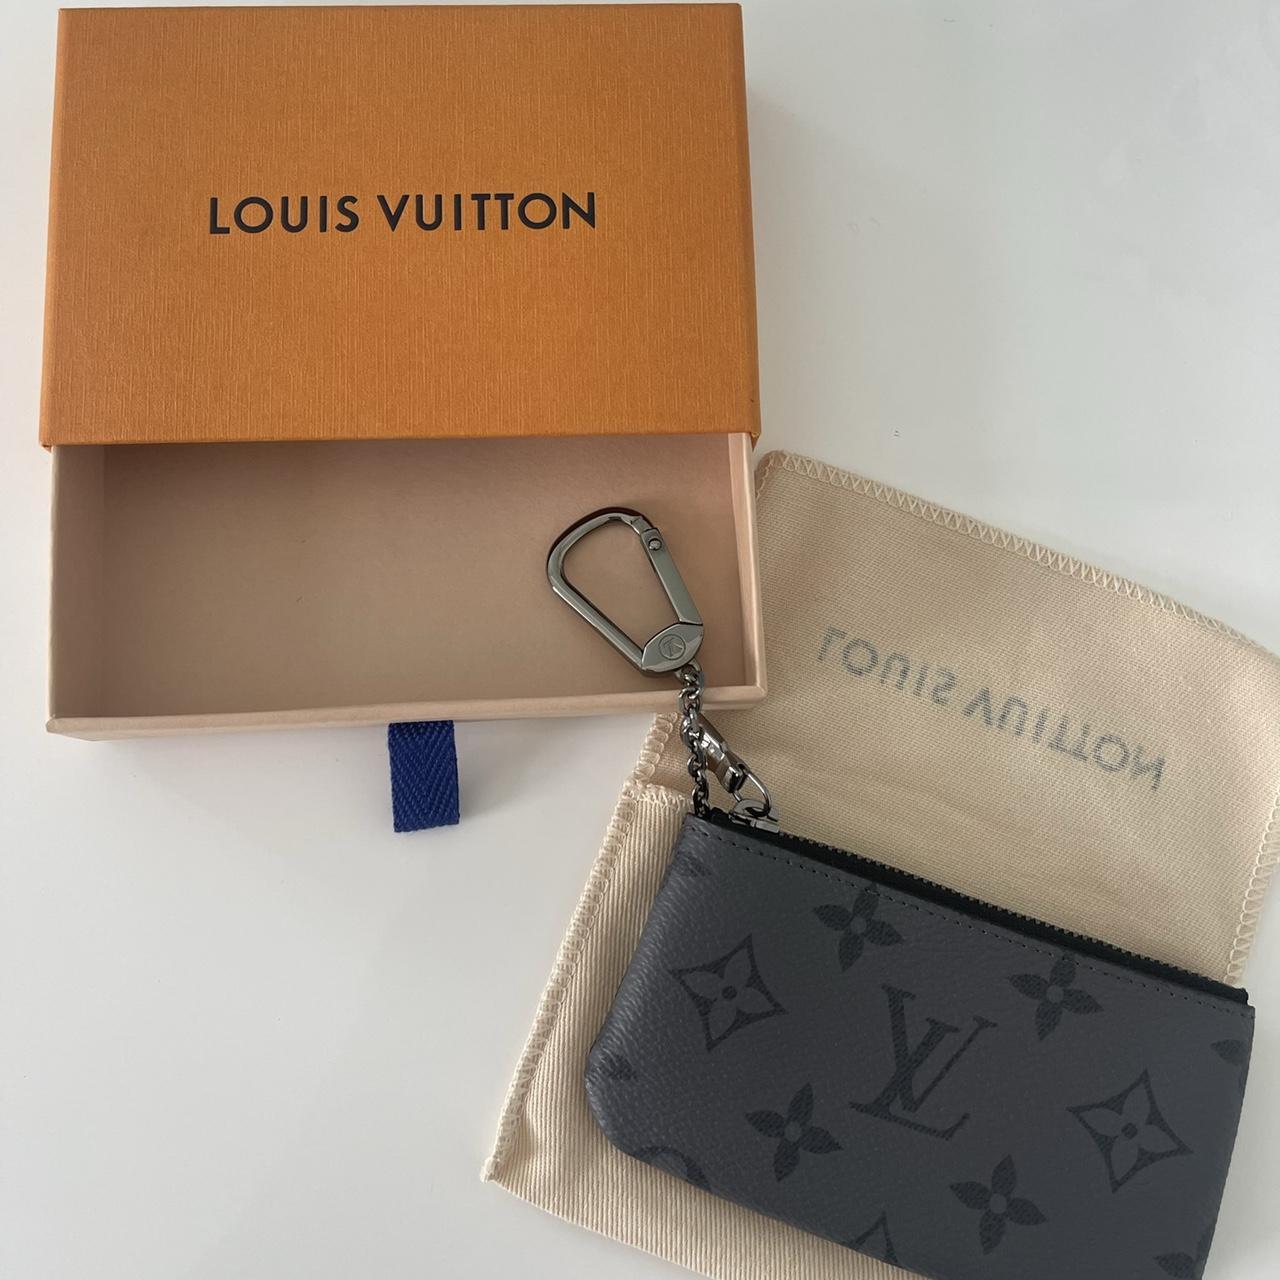 Authentic Louis Vuitton Lock & Key #305 in excellent - Depop